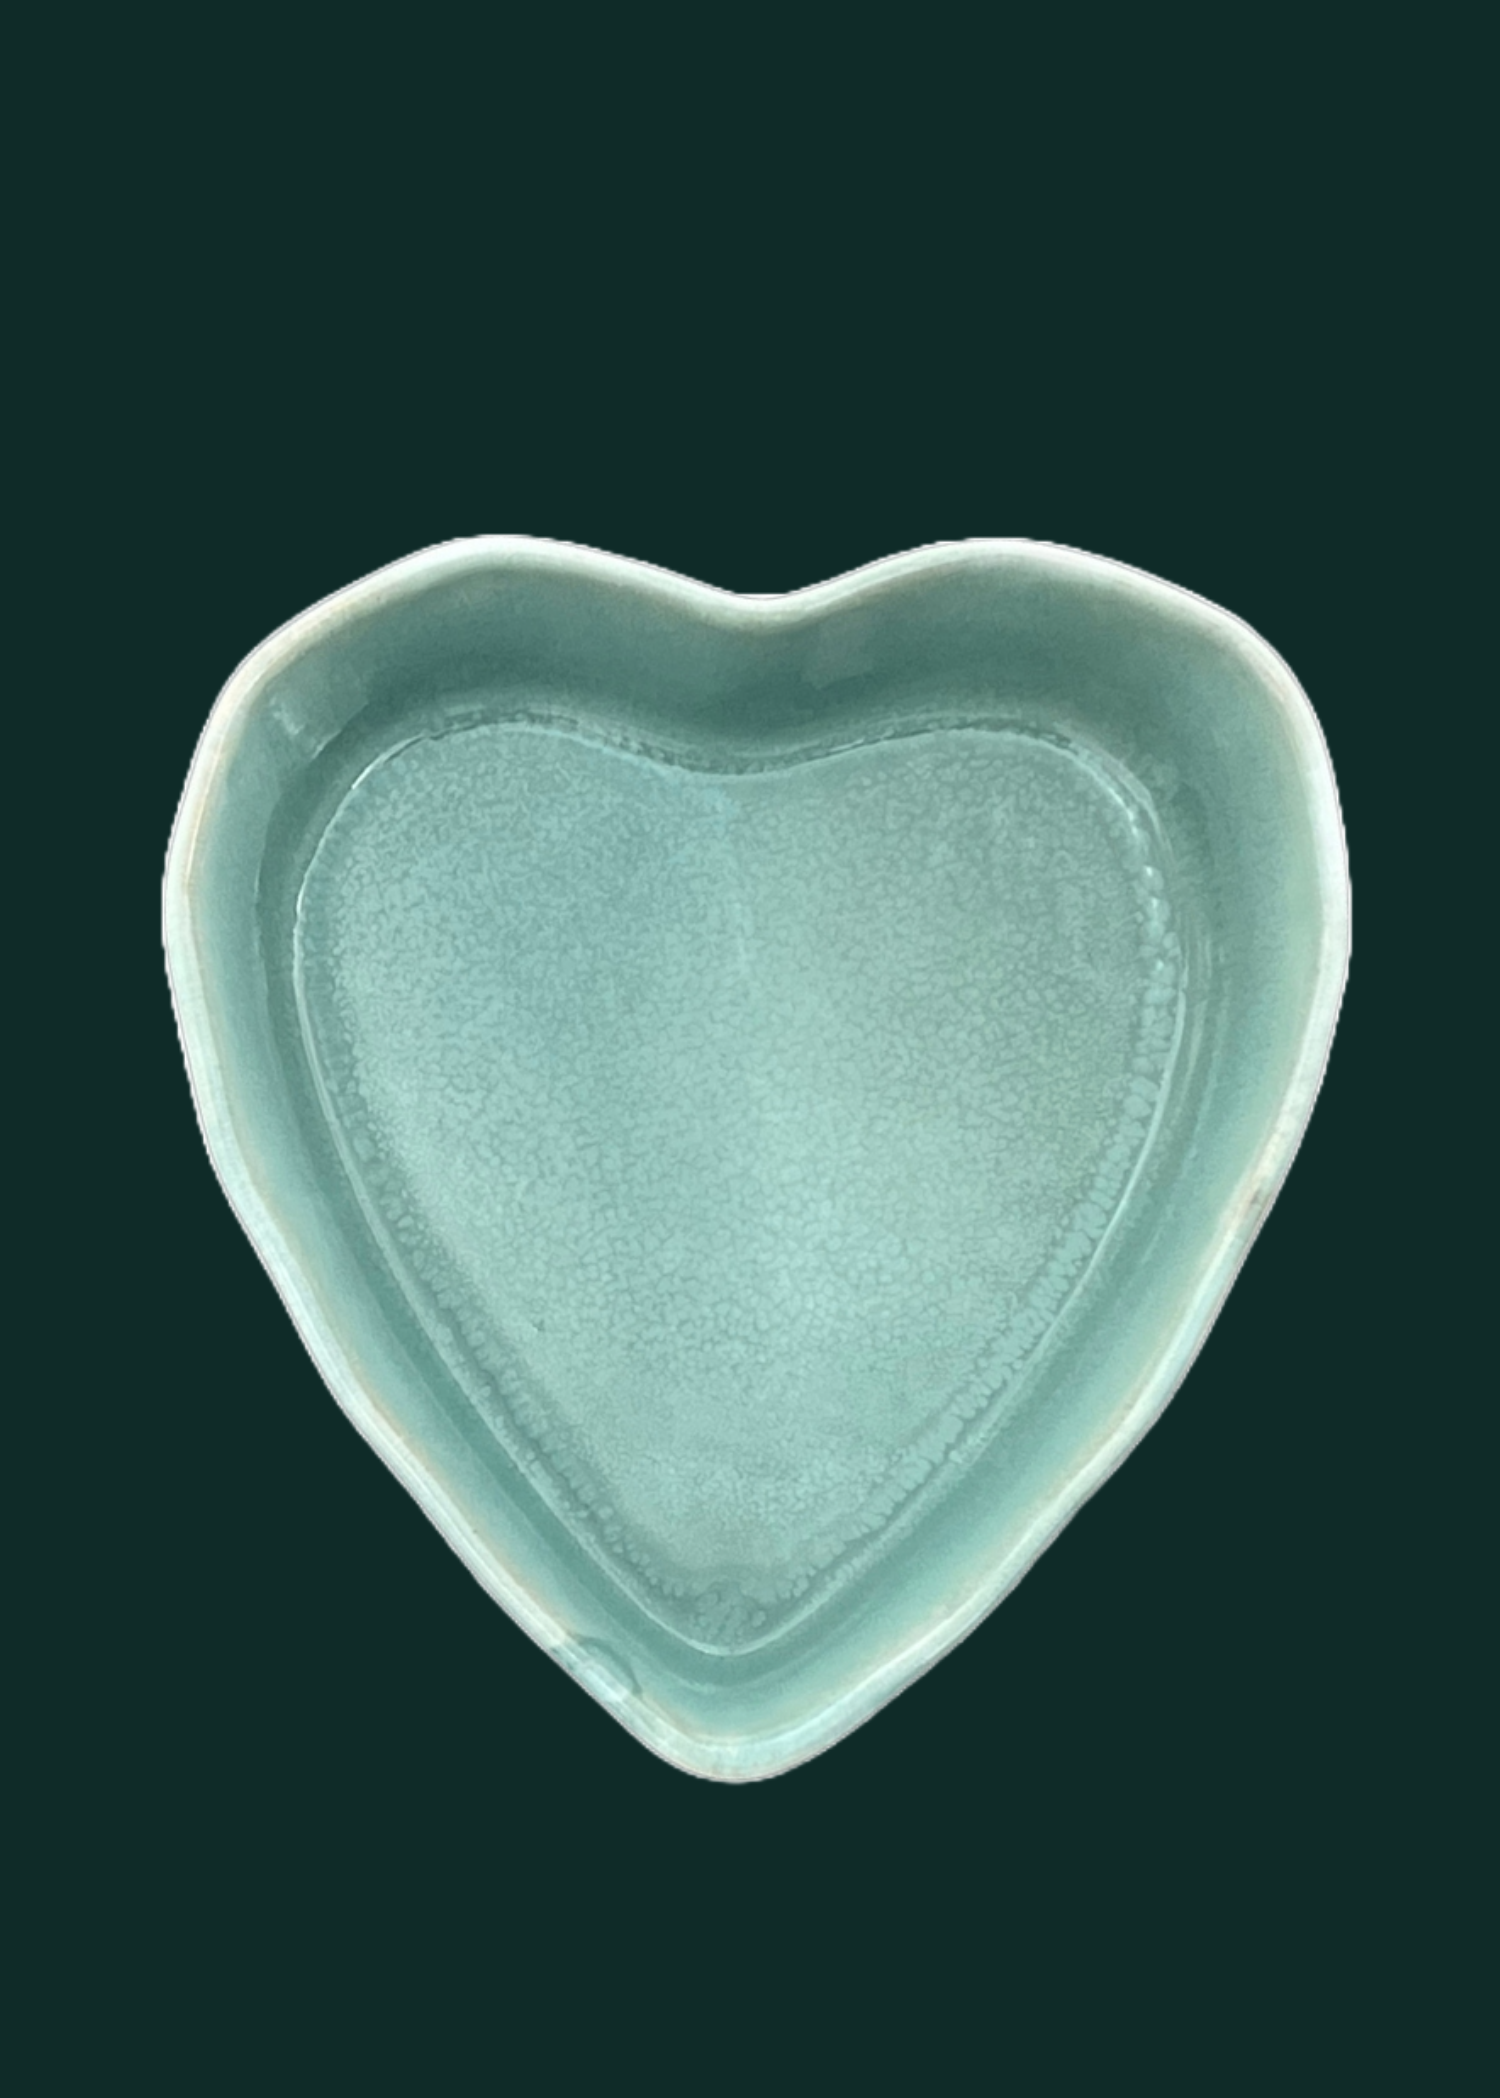 Herzschüssel große Liebe - Immergrün mit Backmischung weil Liebe durch den Magen geht